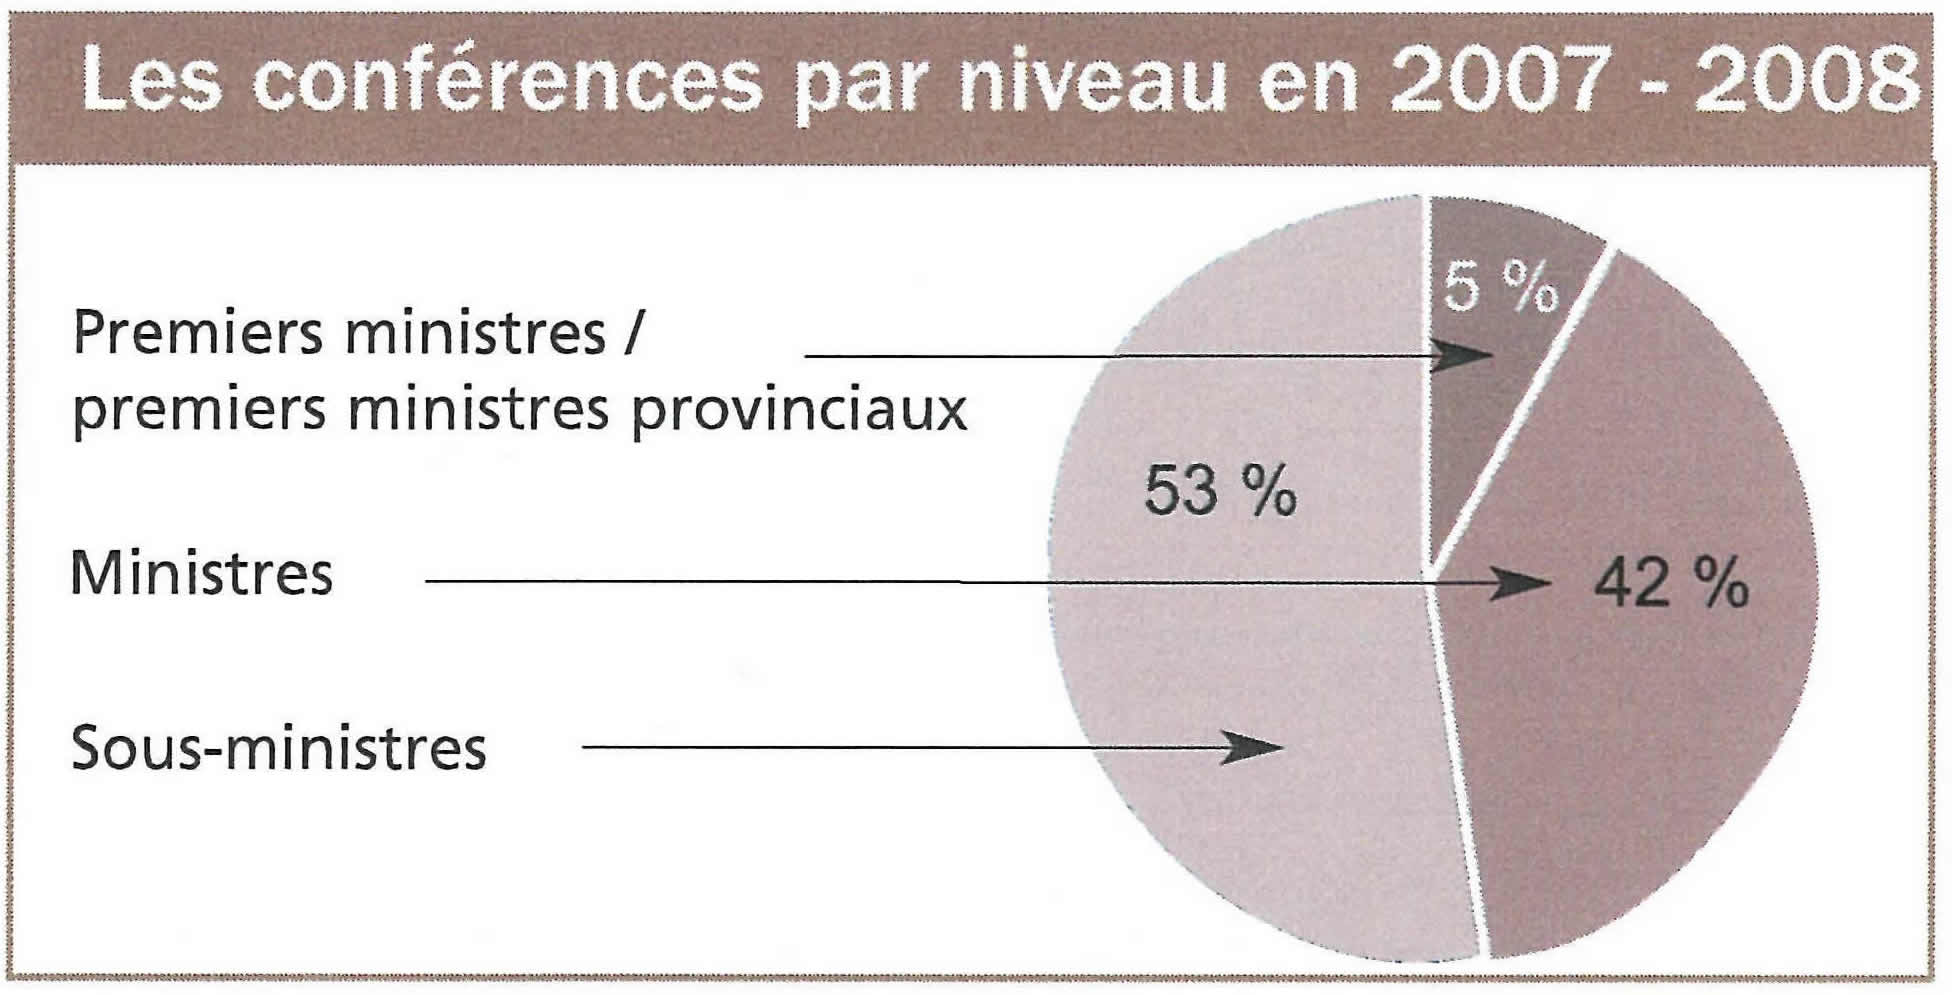 Pourcentage de confrences desservies par niveau, (1) Premiers ministres / premiers ministres provinciaux, (2) ministres et (3) sous-ministres, en 2007-2008.